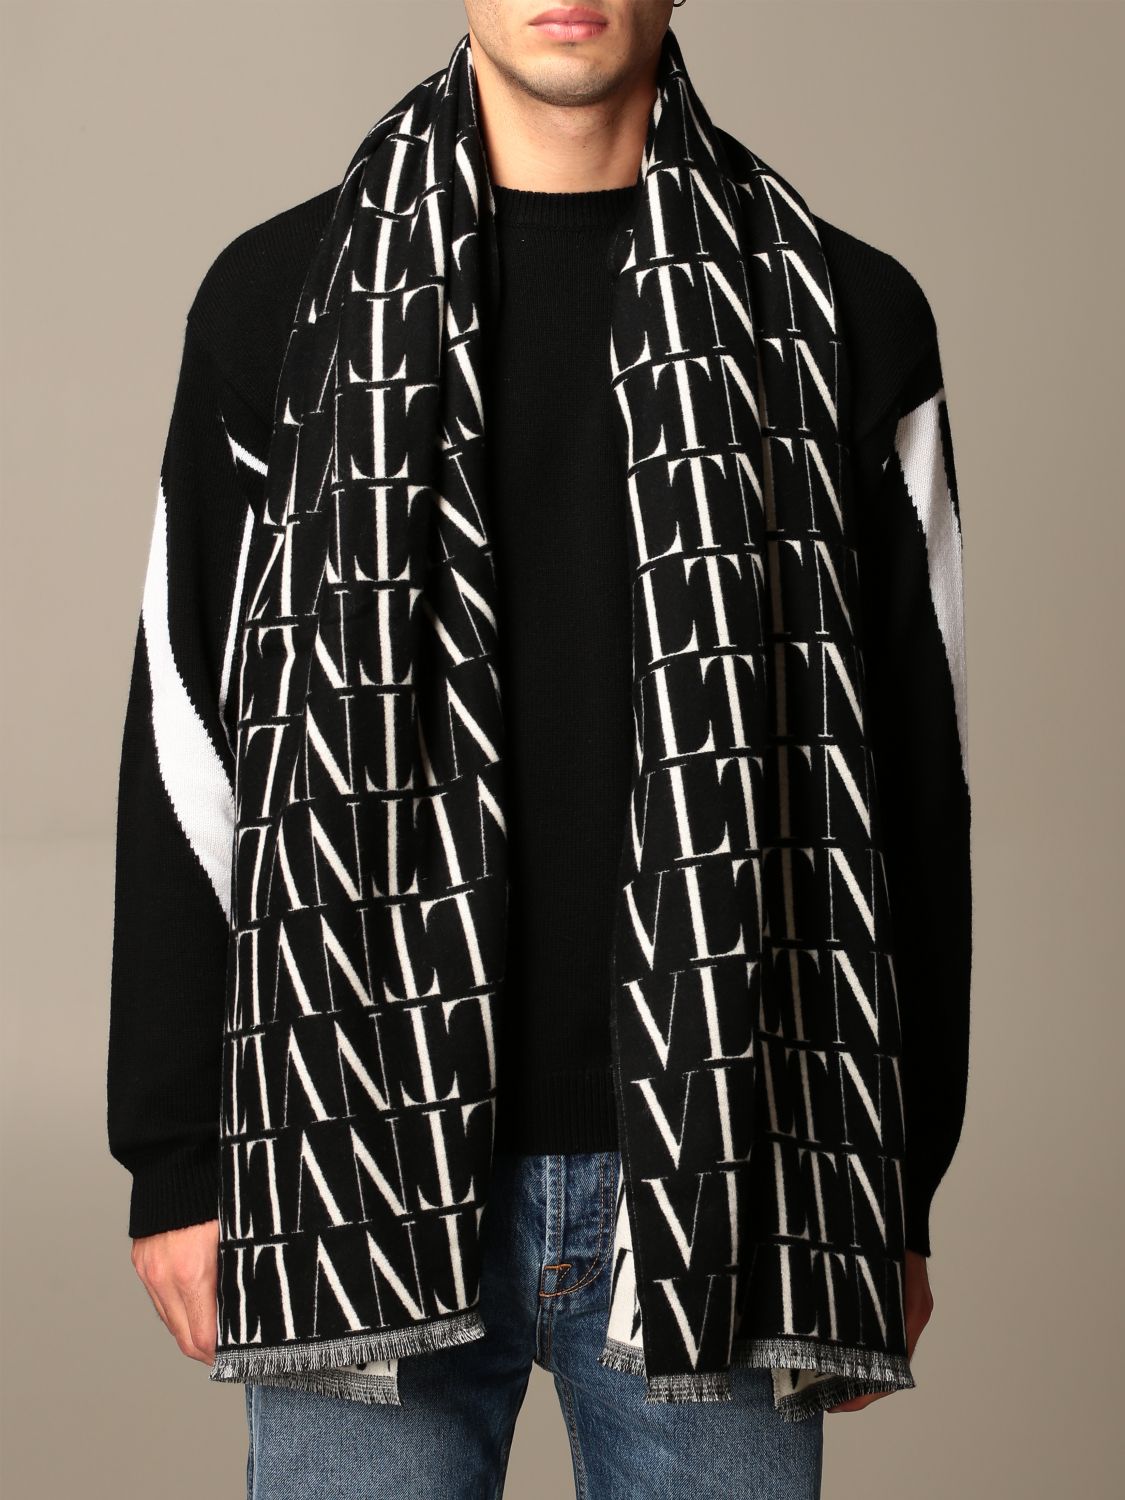 VALENTINO GARAVANI: VLTN scarf in virgin wool and cashmere | Scarf ...